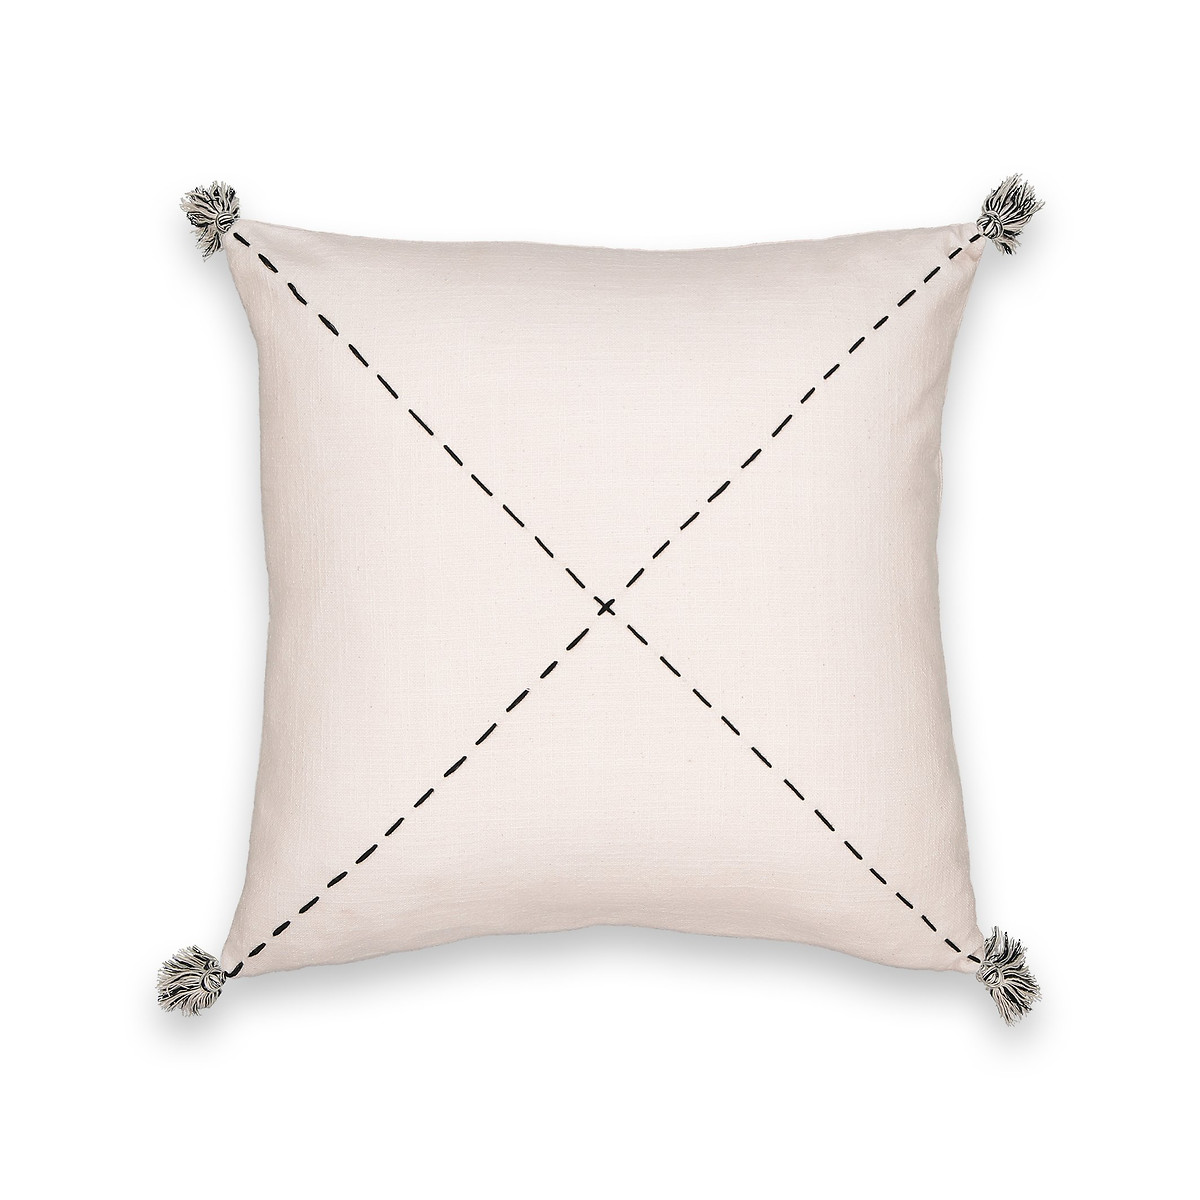 Girandole Hand Embroidered Cotton Cushion Cover